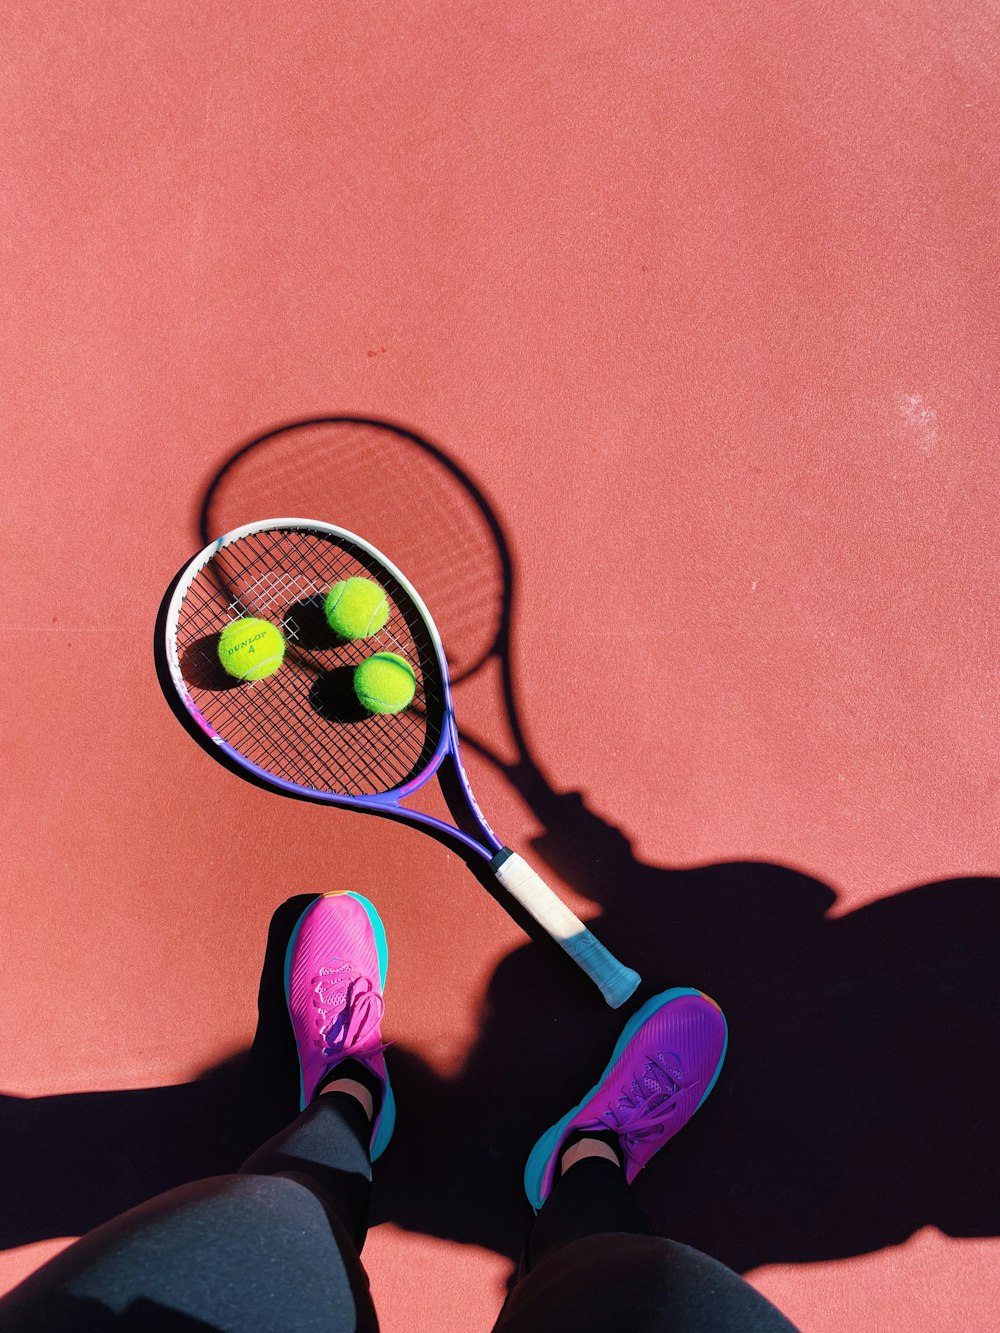 uma pessoa em pé em uma quadra de tênis segurando uma raquete de tênis